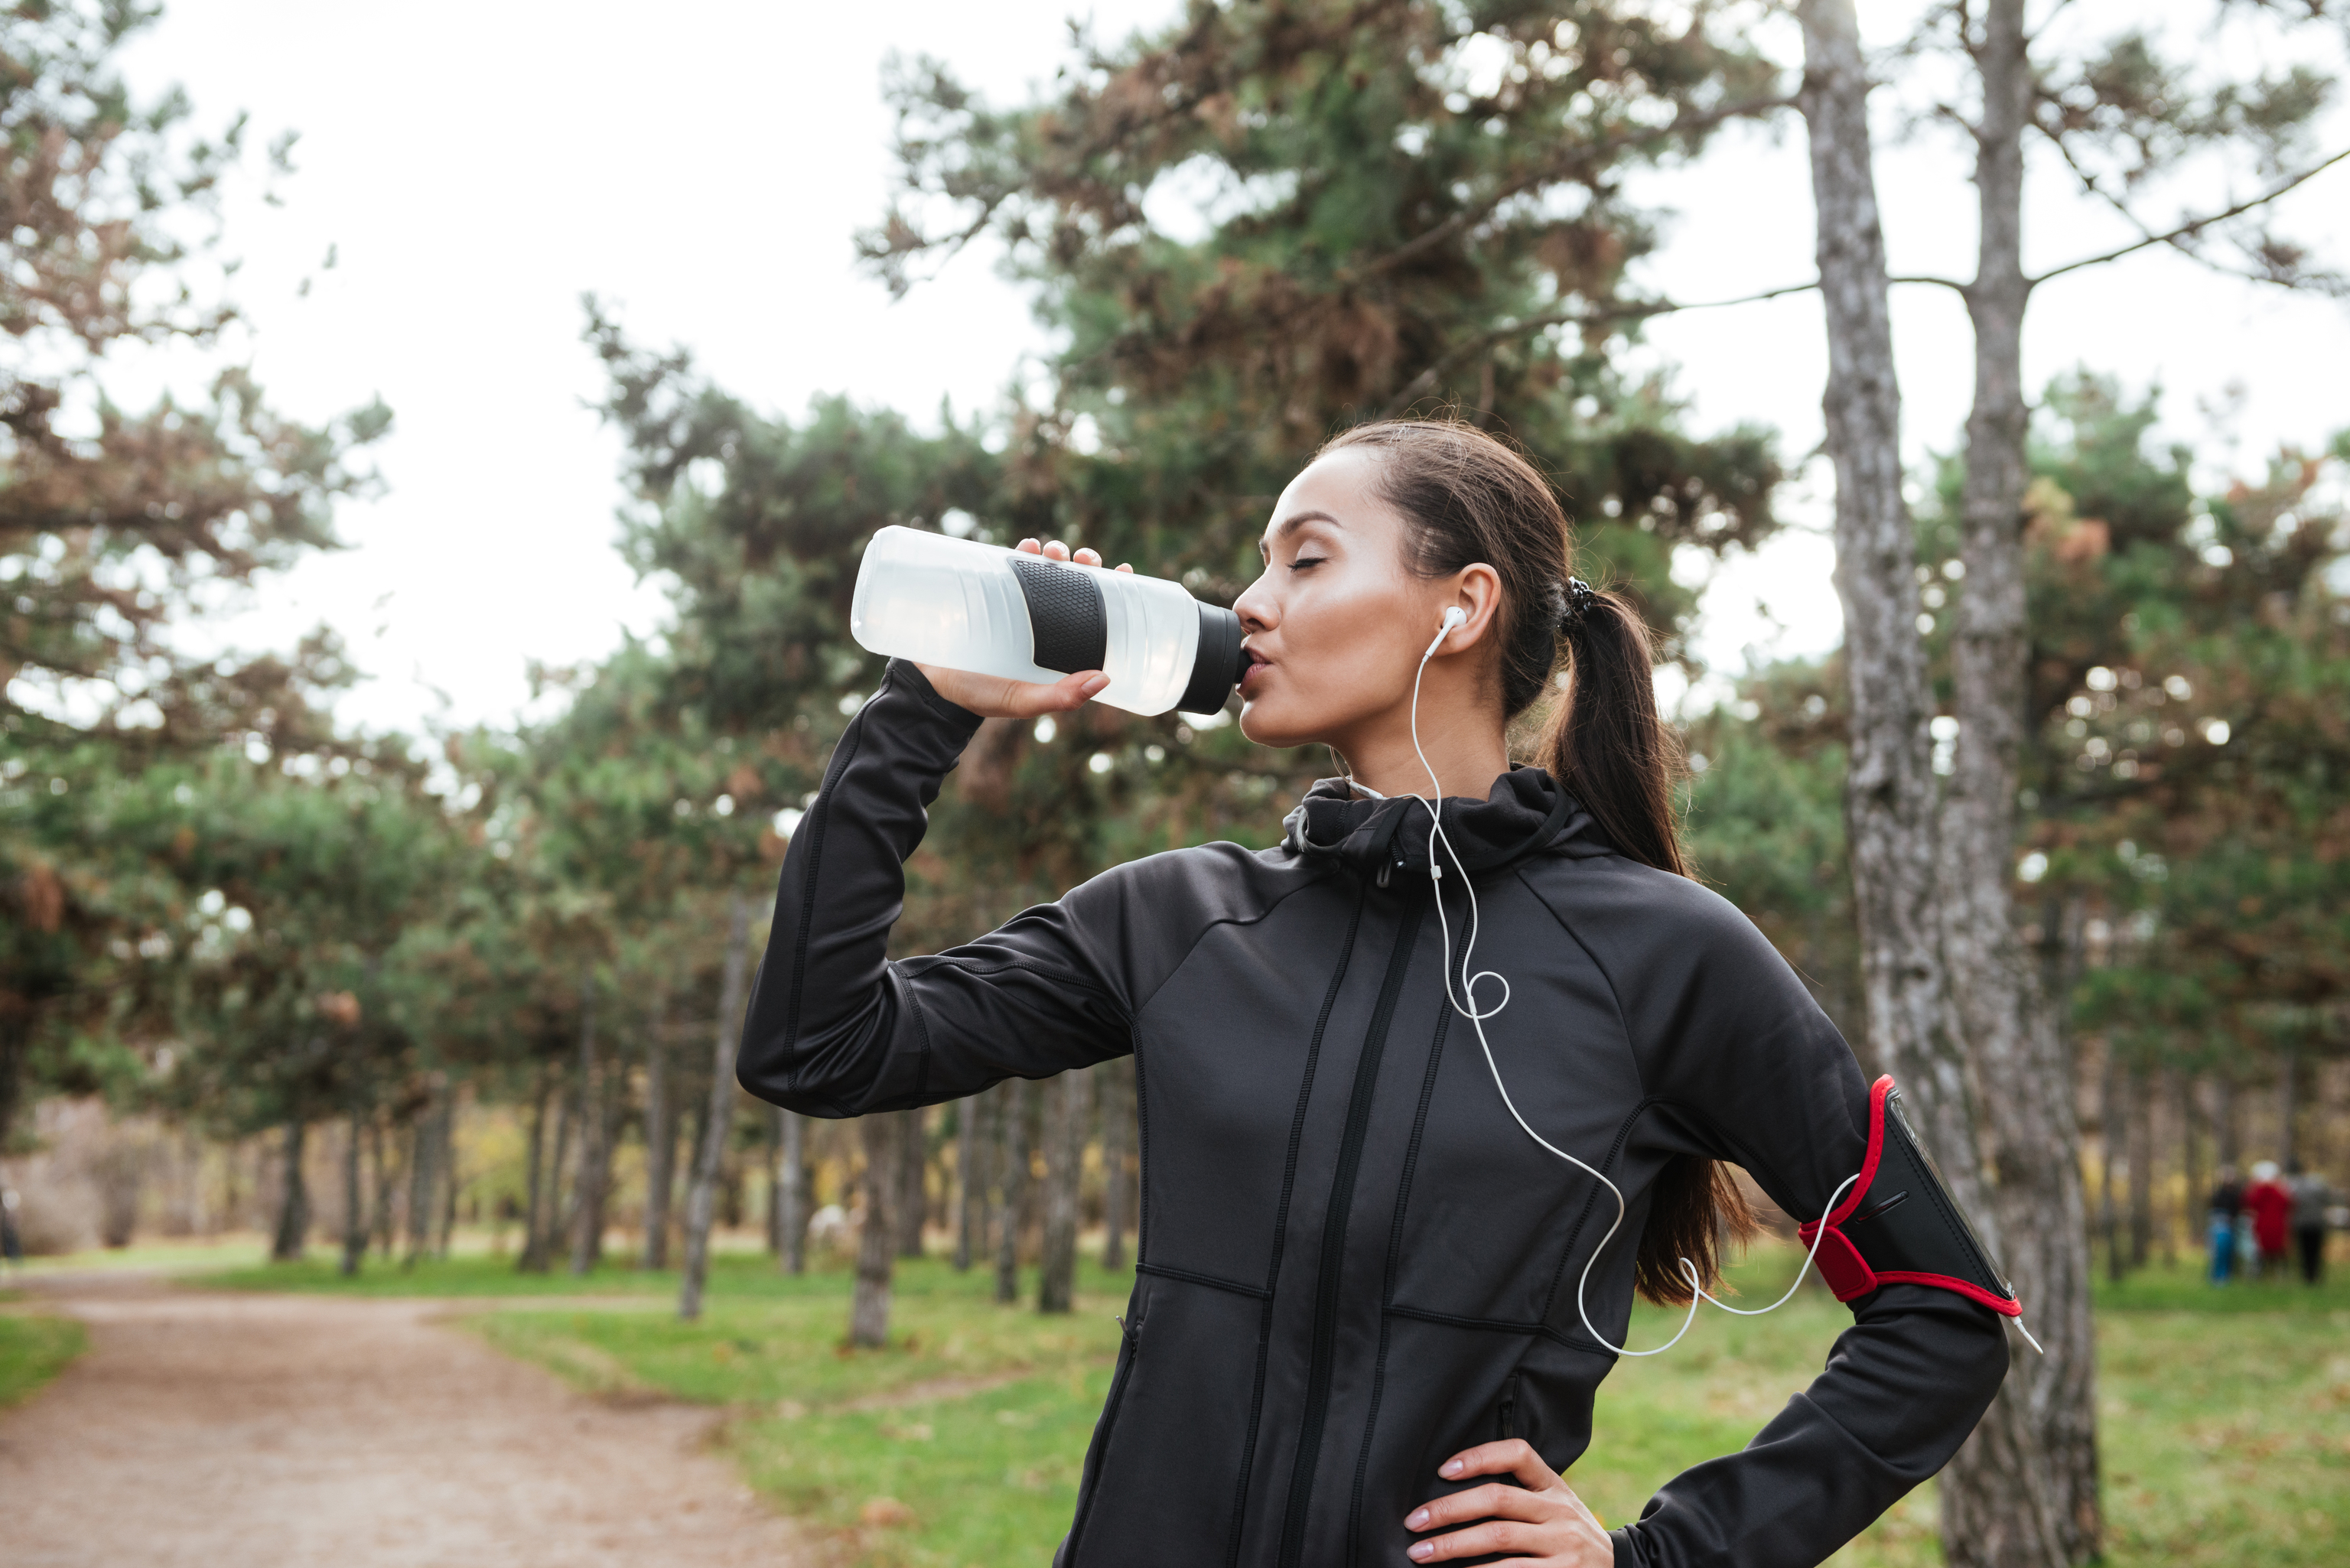 ¿Qué pasa si tomas agua mientras haces ejercicio? Los expertos responden